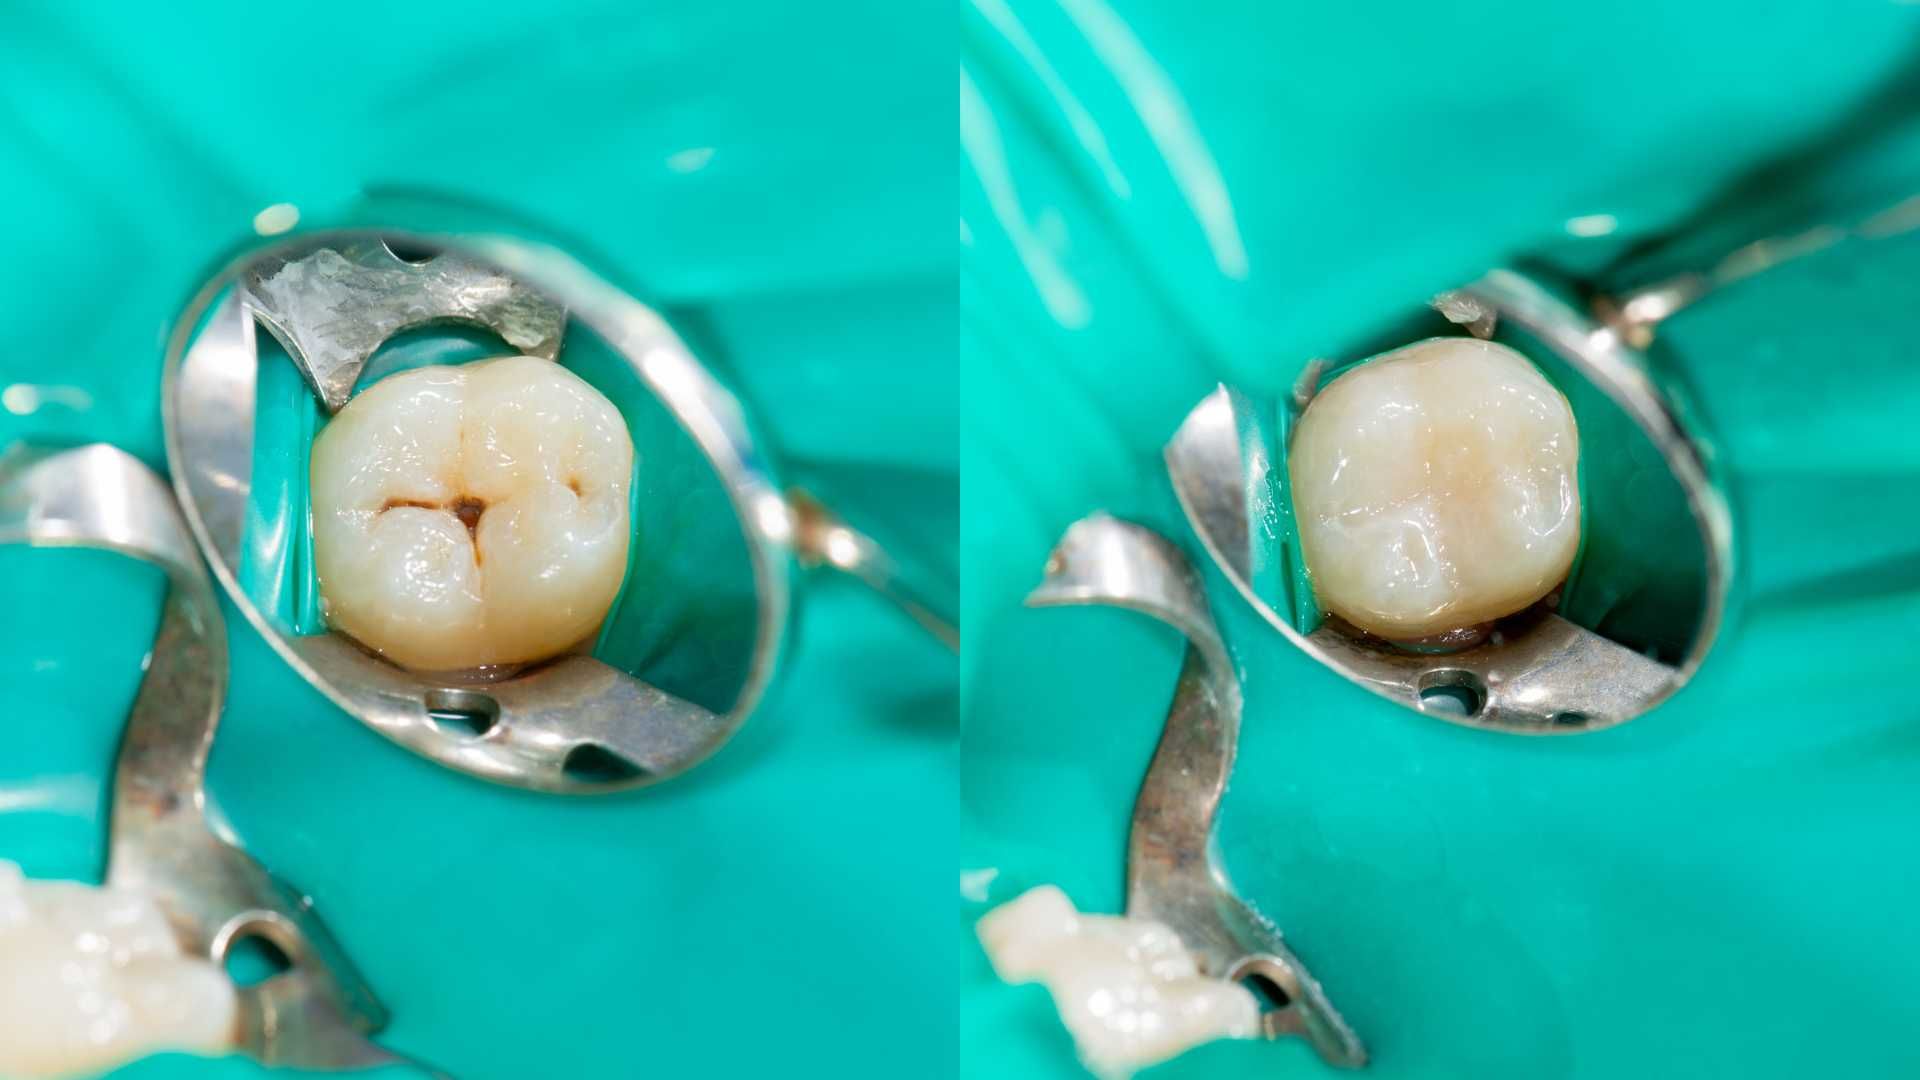 پرکردن دندان یک سطحی با آمالگام ایرانی